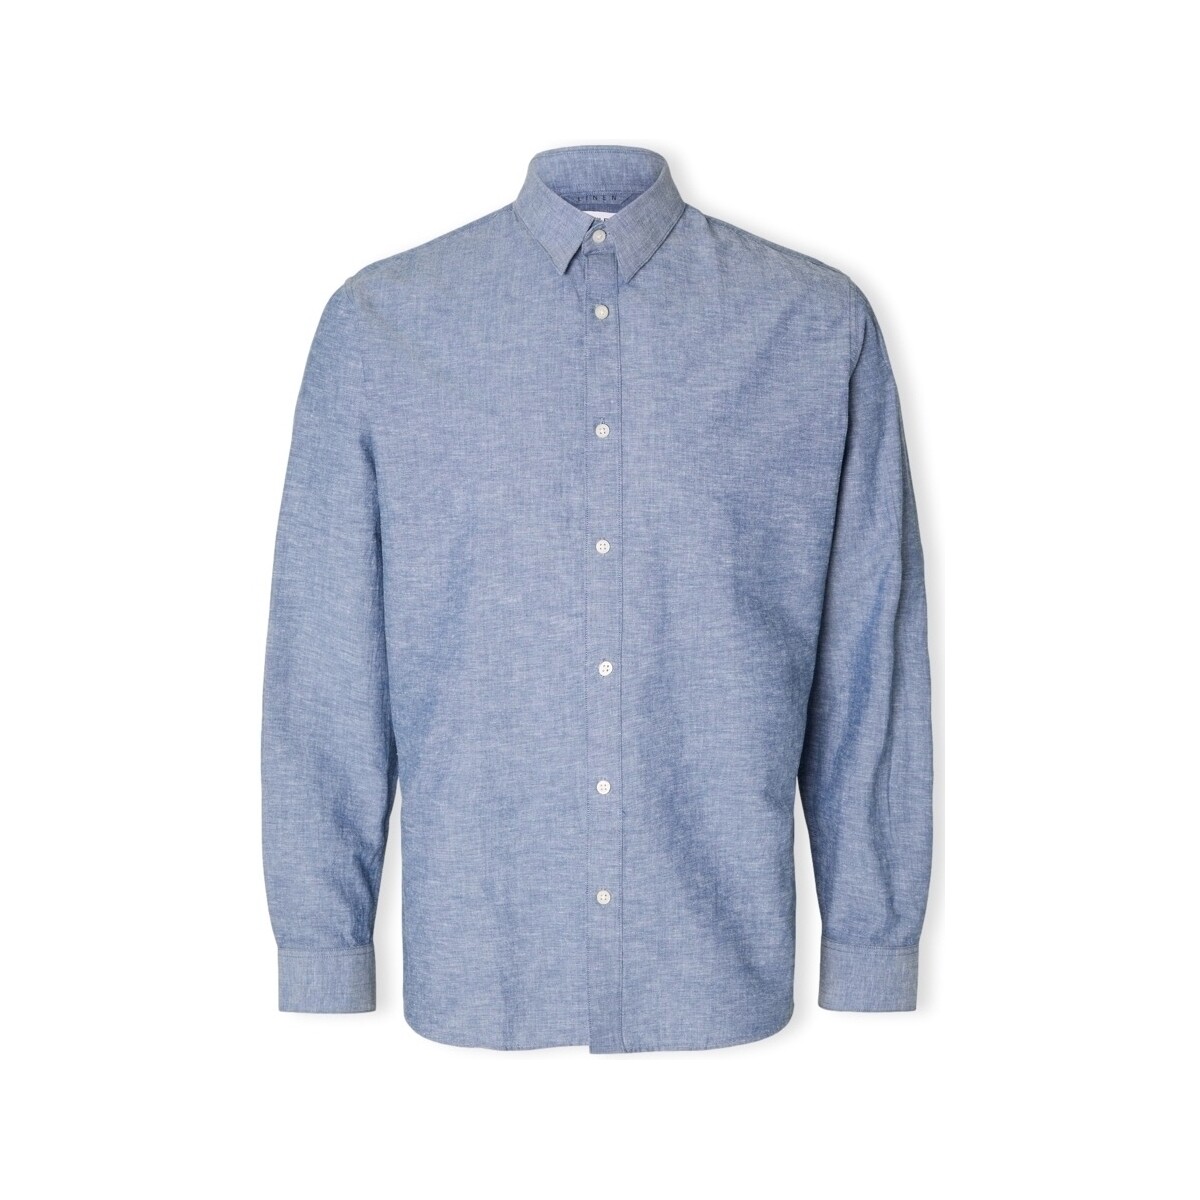 Textiel Heren Overhemden lange mouwen Selected Noos Slimnew-linen Shirt L/S - Medium Blue Denim Blauw